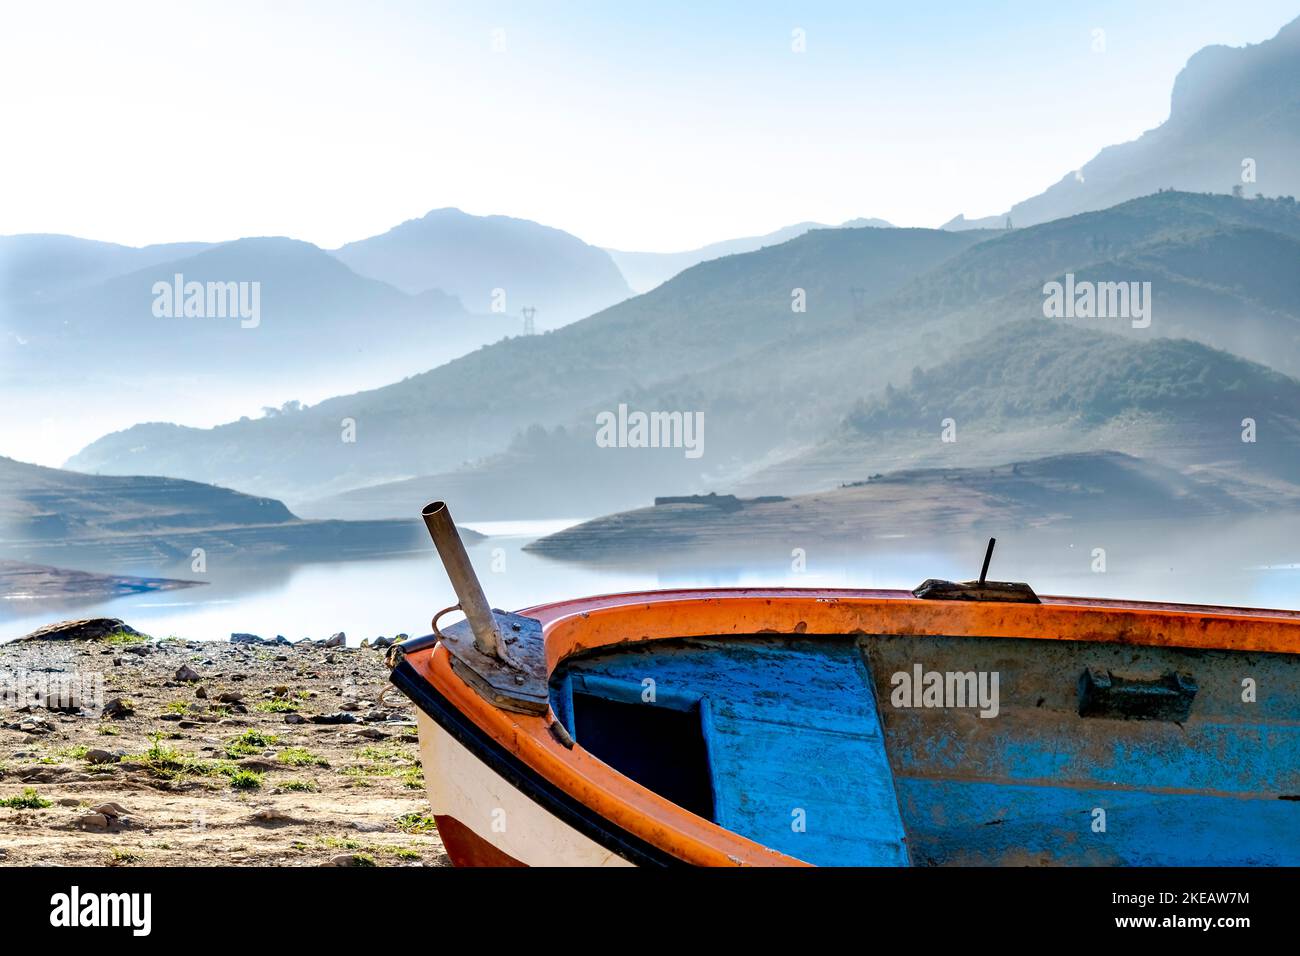 Vecchia canoa in legno, barca di colore blu, arancione e bianco arenata su terra sterrata asciutta nella diga del lago Bouzegza Keddara con le montagne nebbre riflesse. Foto Stock